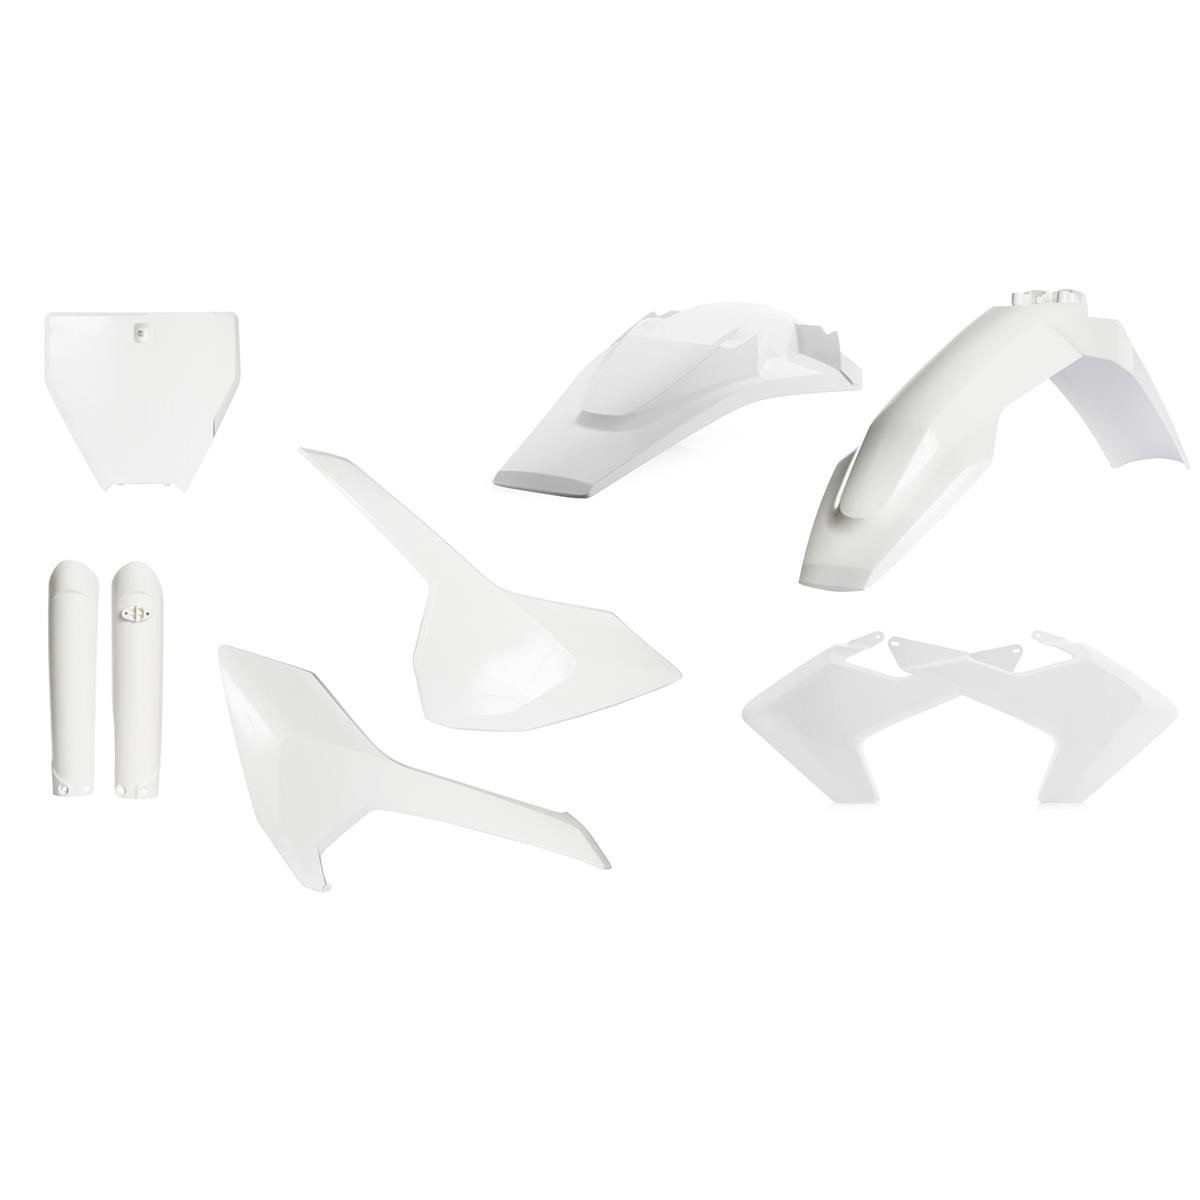 Acerbis Plastik-Kit Full-Kit Husqvarna TC 125/250, FC 250/350/450 16-18, Weiß